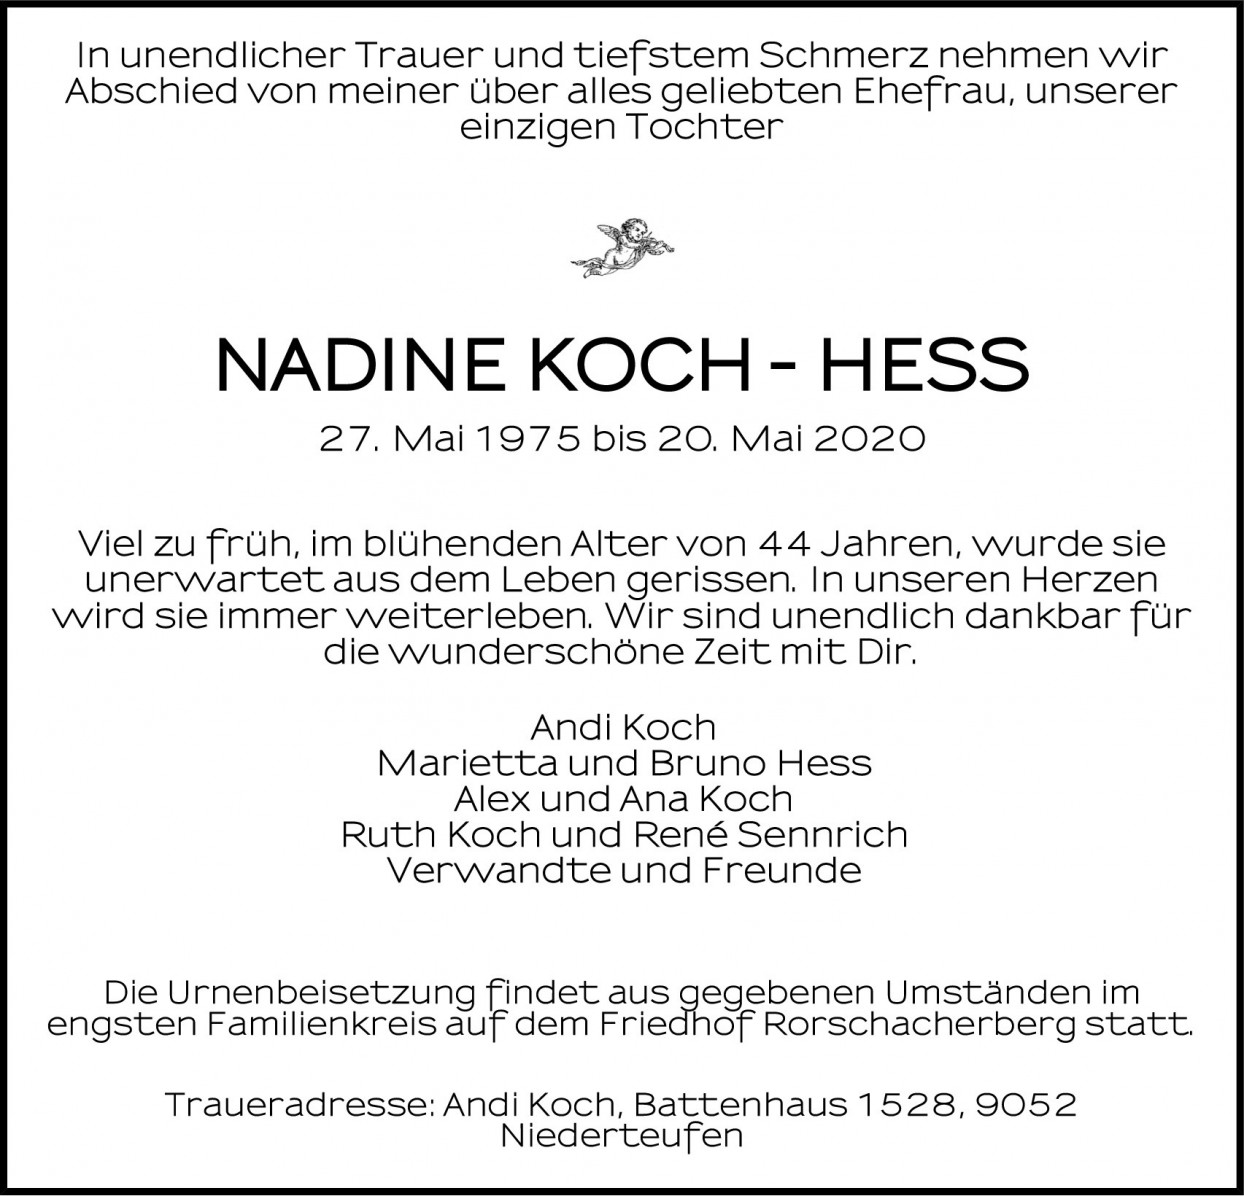 Nadine Koch-Hess